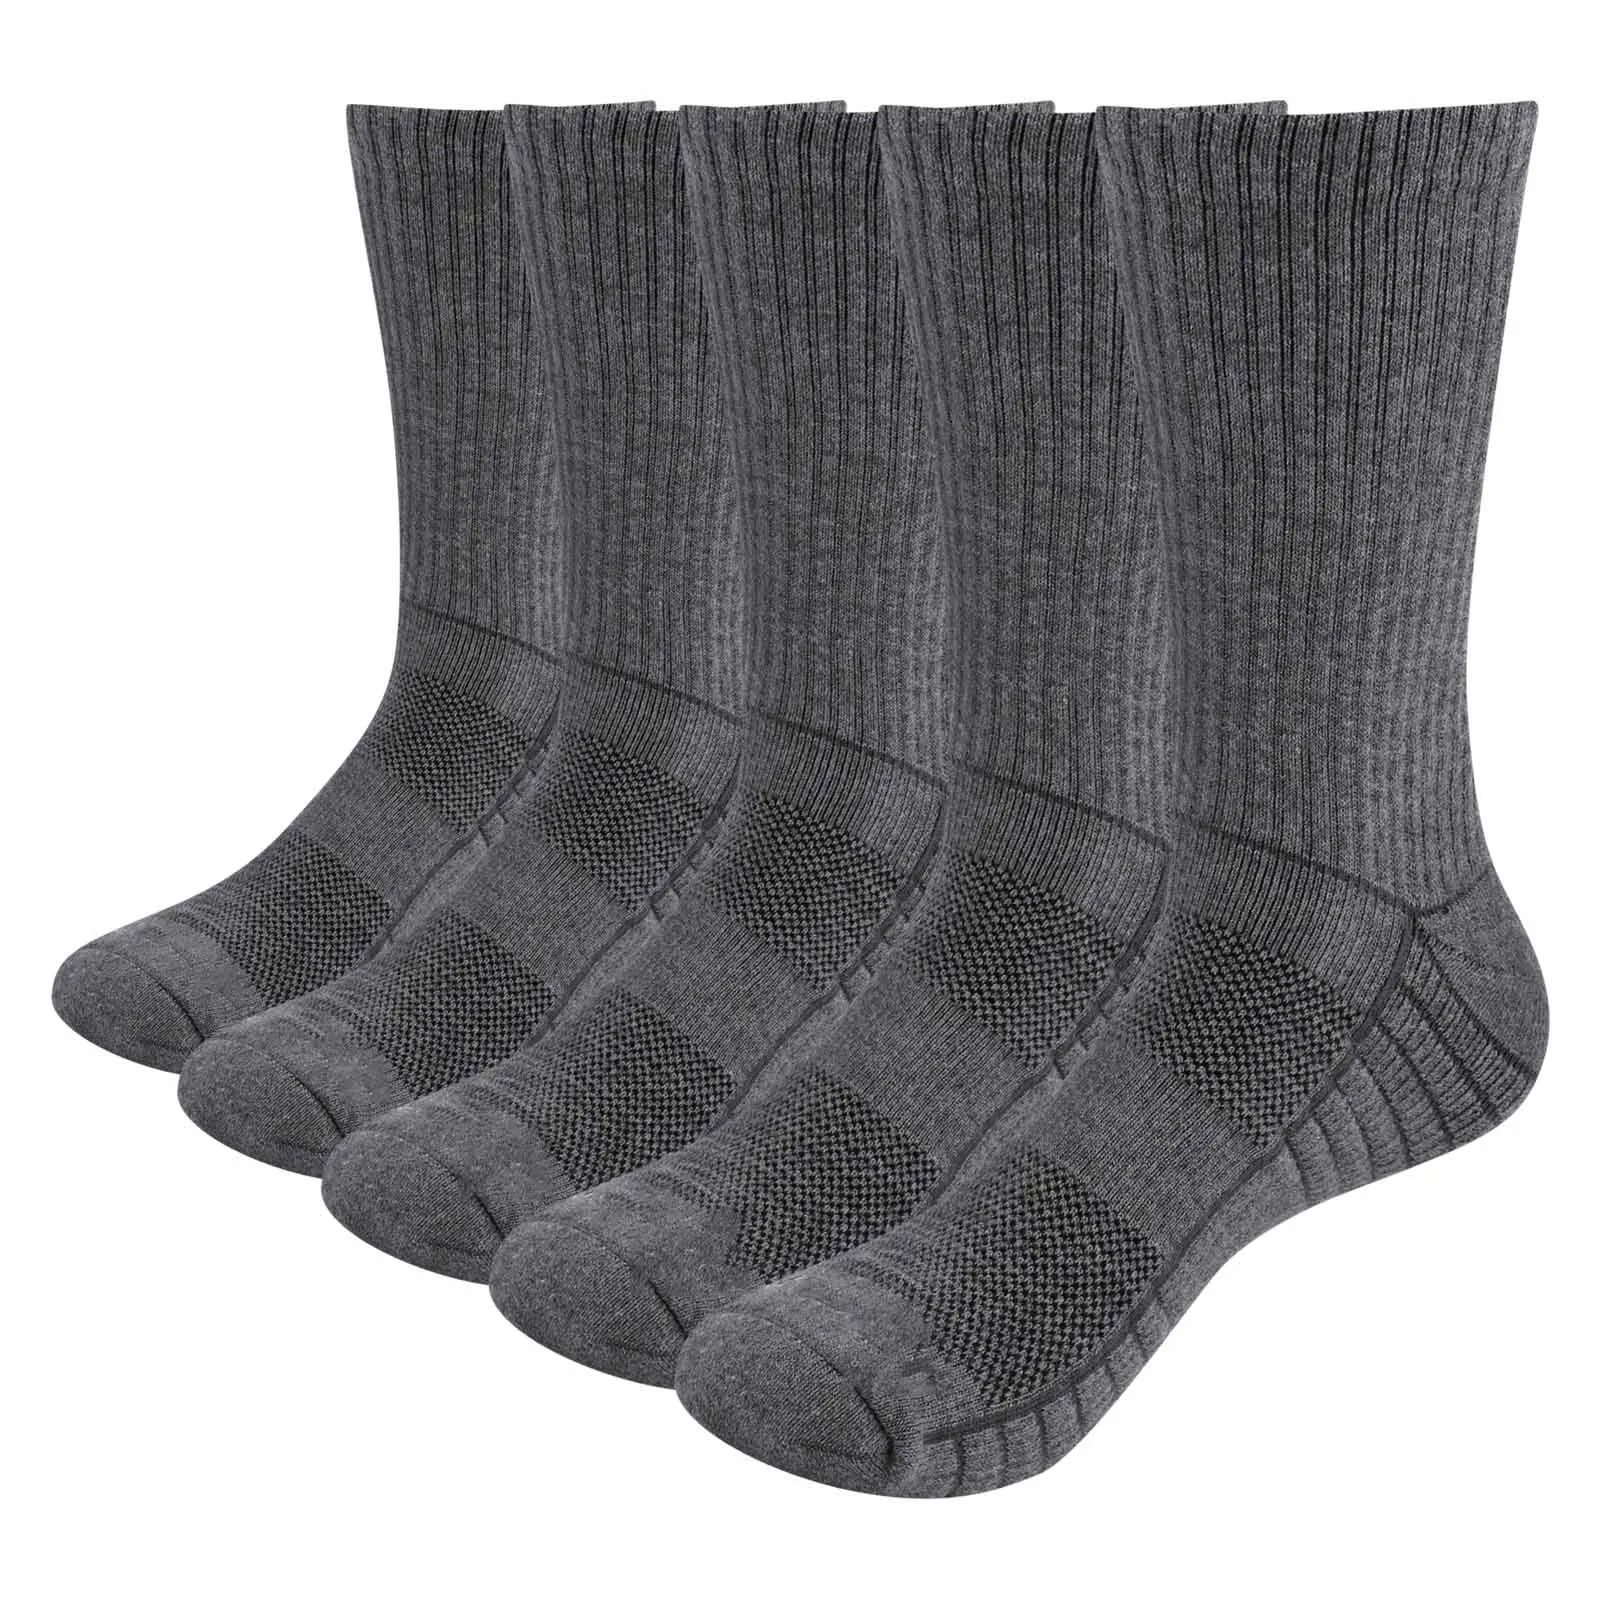 YUEDGE-Calcetines atléticos transpirables para hombre, medias informales acolchadas para entrenamiento en el gimnasio, calcetín de trabajo con suela acolchada, talla 6-13